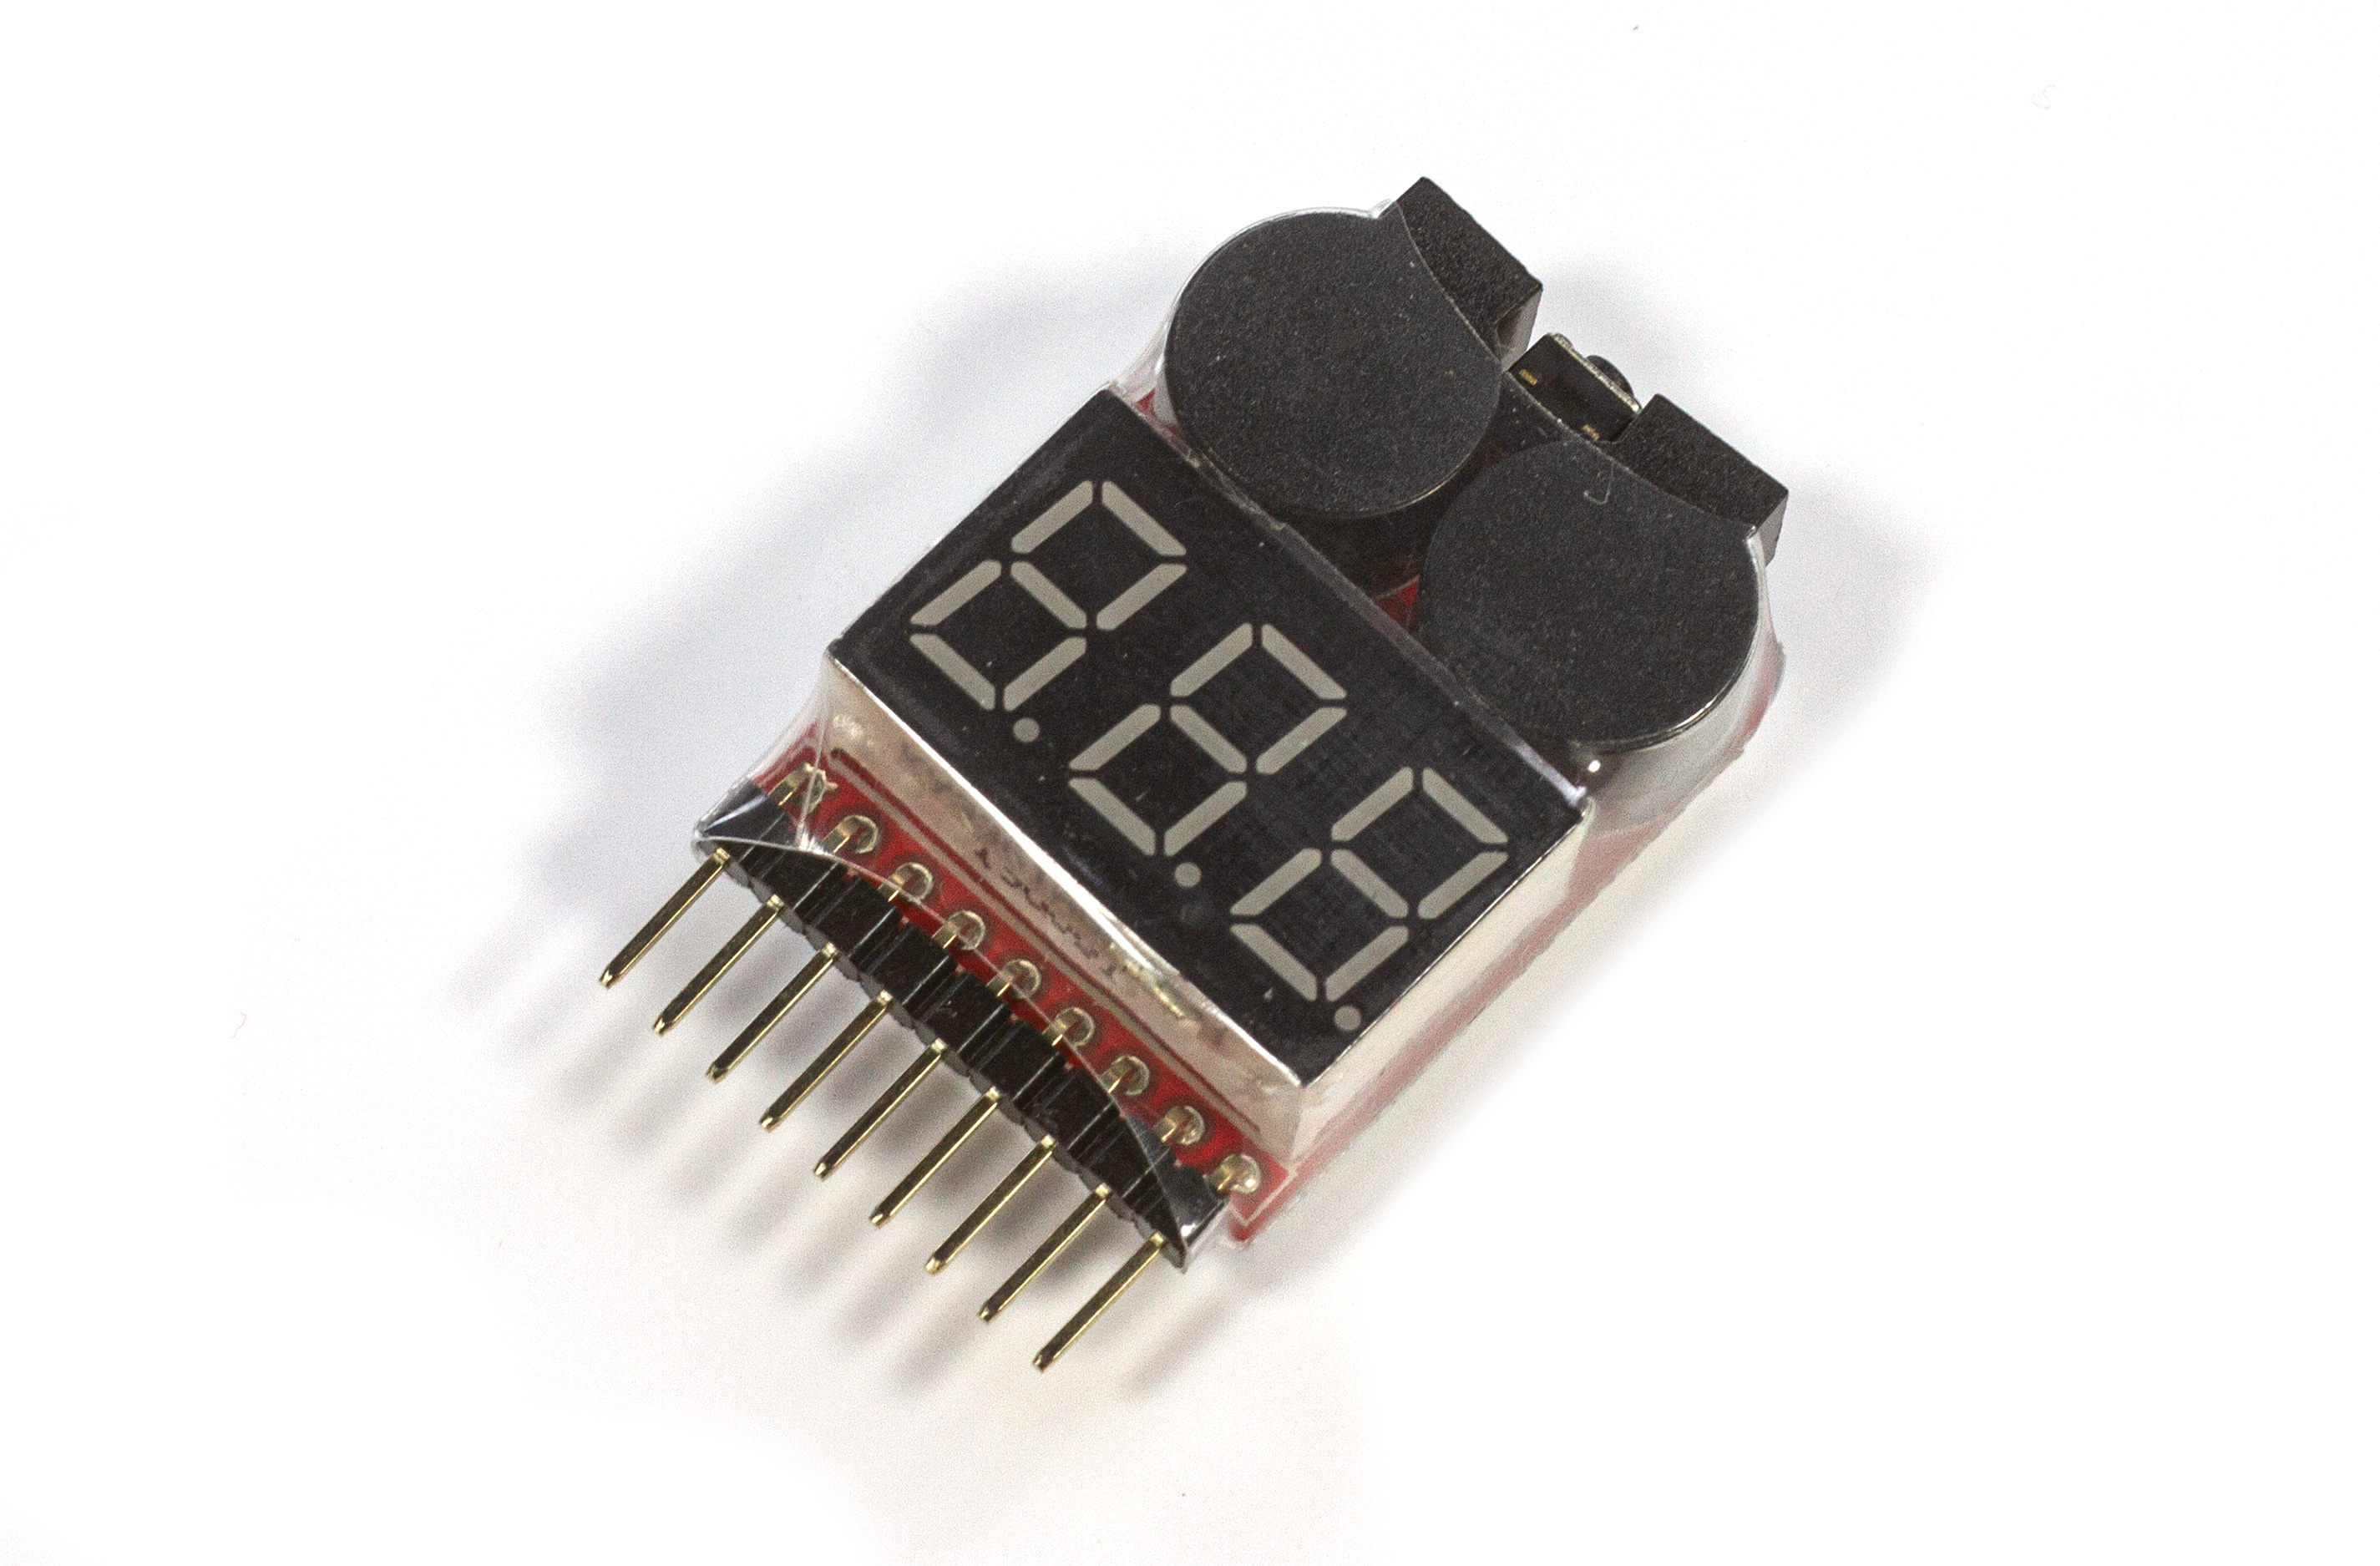 y1569 Low voltage buzzer with voltage test